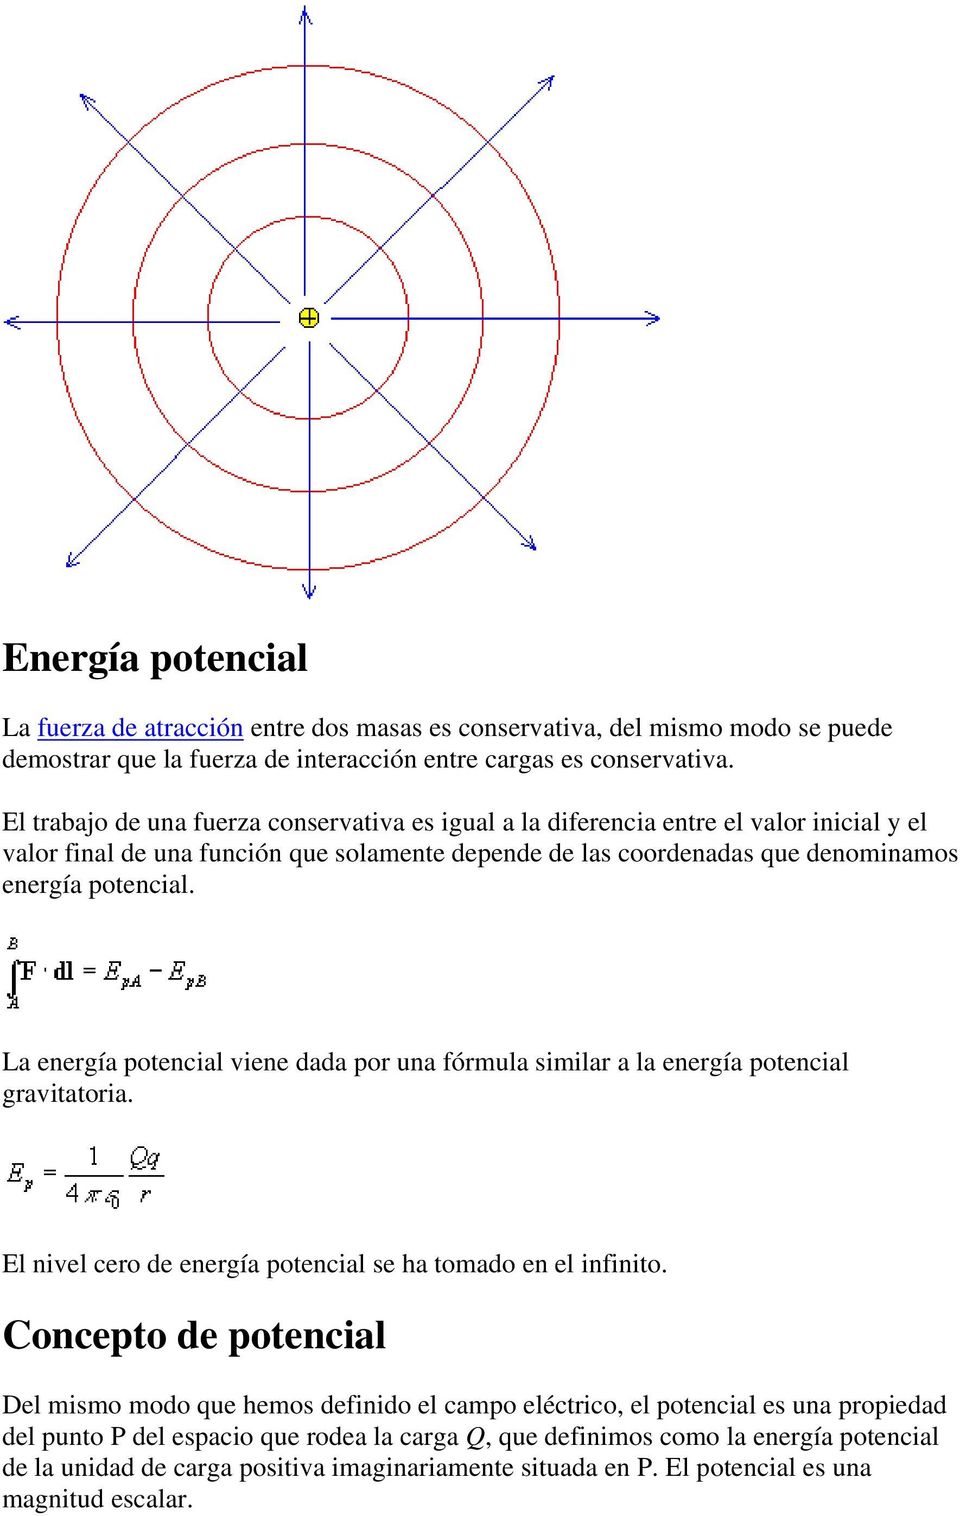 La energía potencial viene dada por una fórmula similar a la energía potencial gravitatoria. El nivel cero de energía potencial se ha tomado en el infinito.